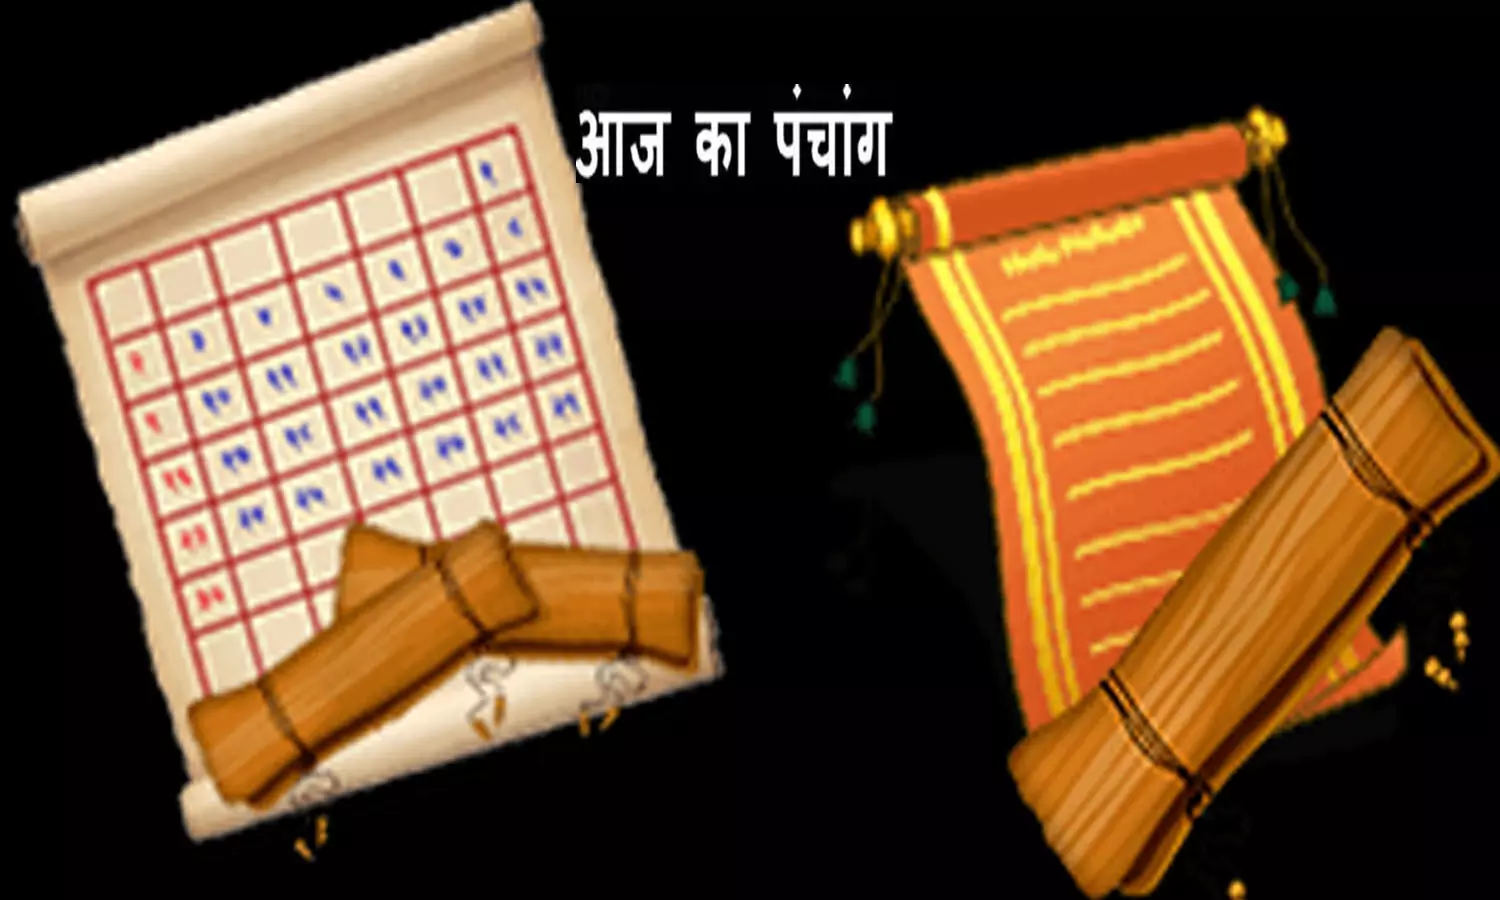 9 January 2023 Ka Panchang Tithi in Hindi : आज का पंचांग बताएगा कब कर खरीदें गाड़ी-मकान, जानिए शुभ-अशुभ मुहूर्त